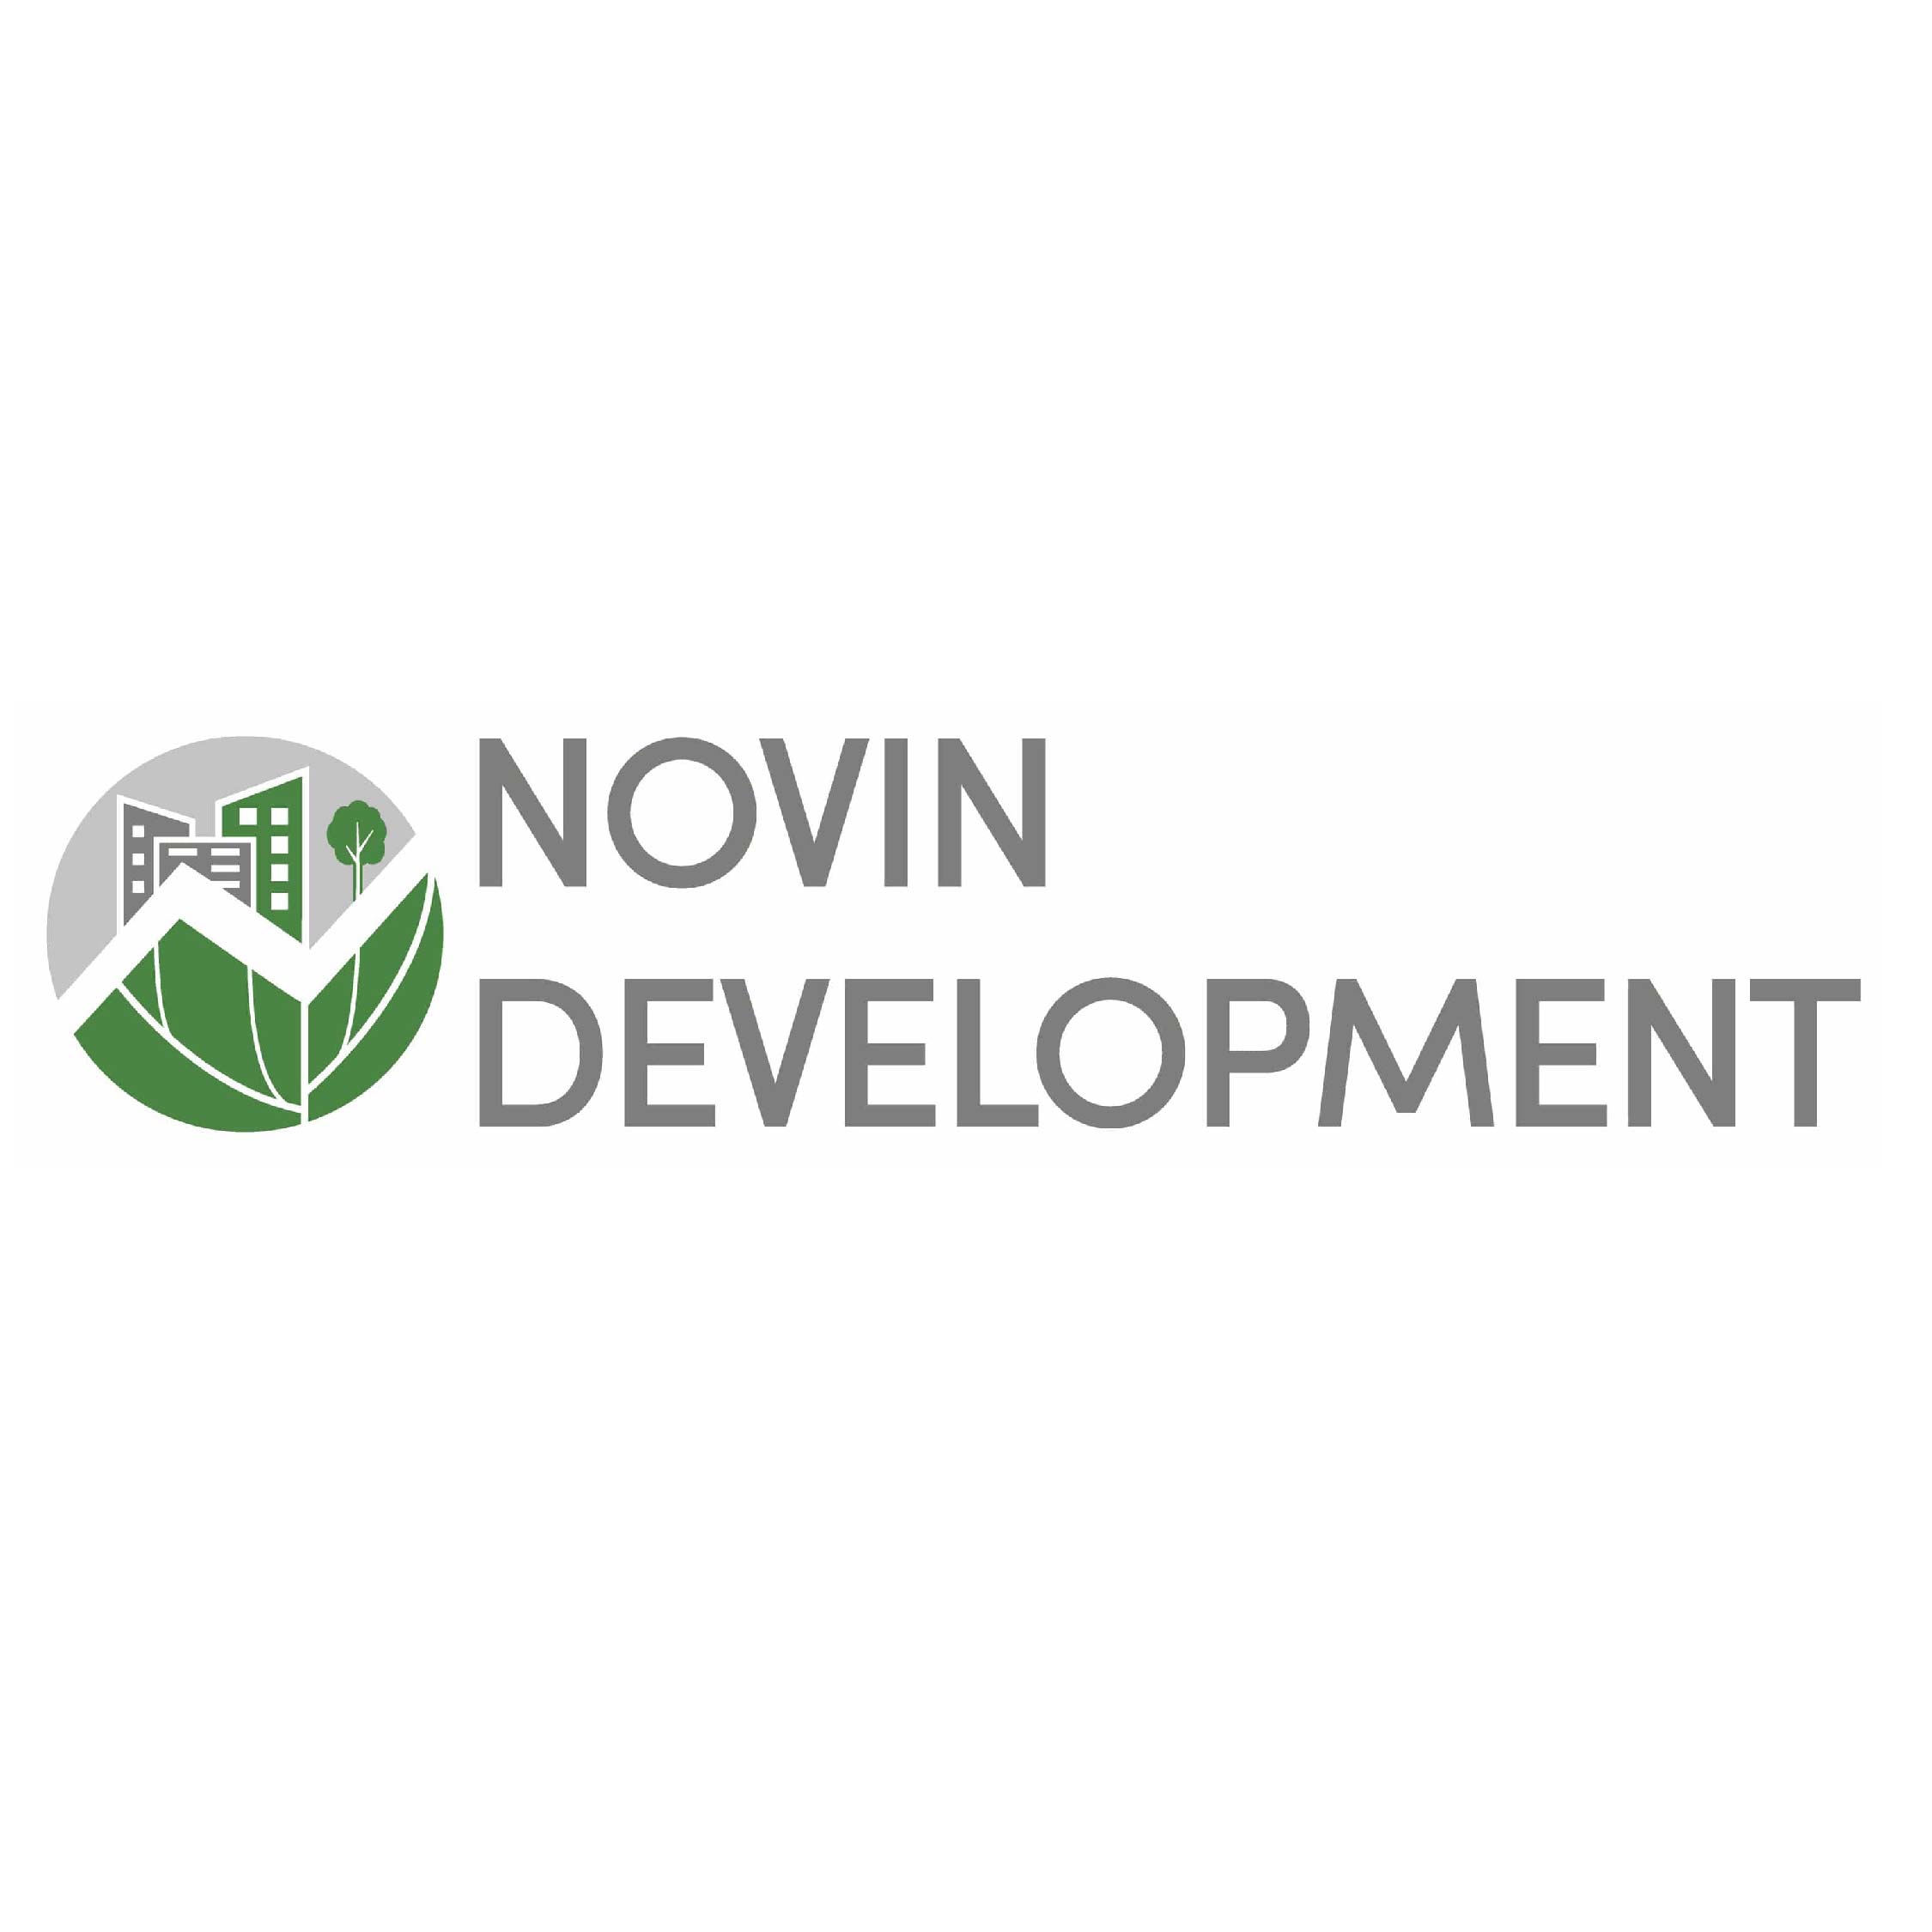 Novin Development